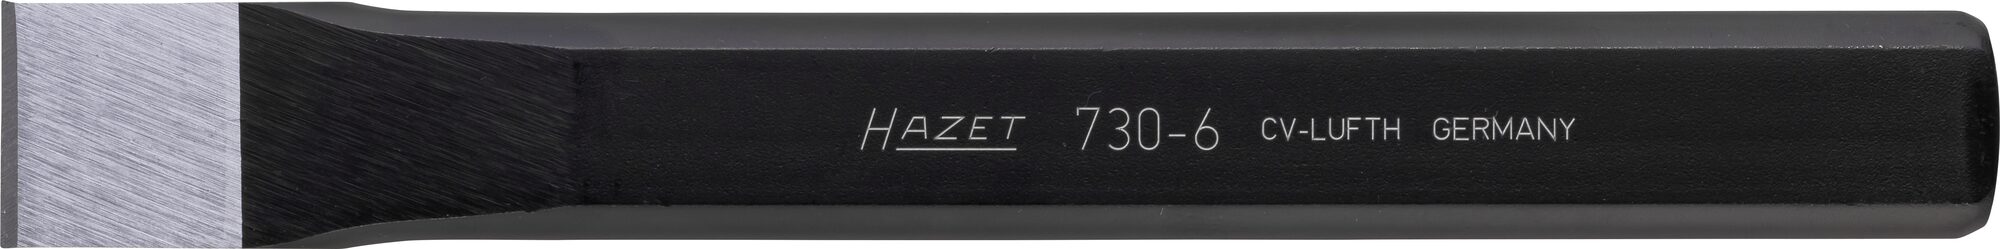 HAZET Flachmeißel 730-6 · 24 mm